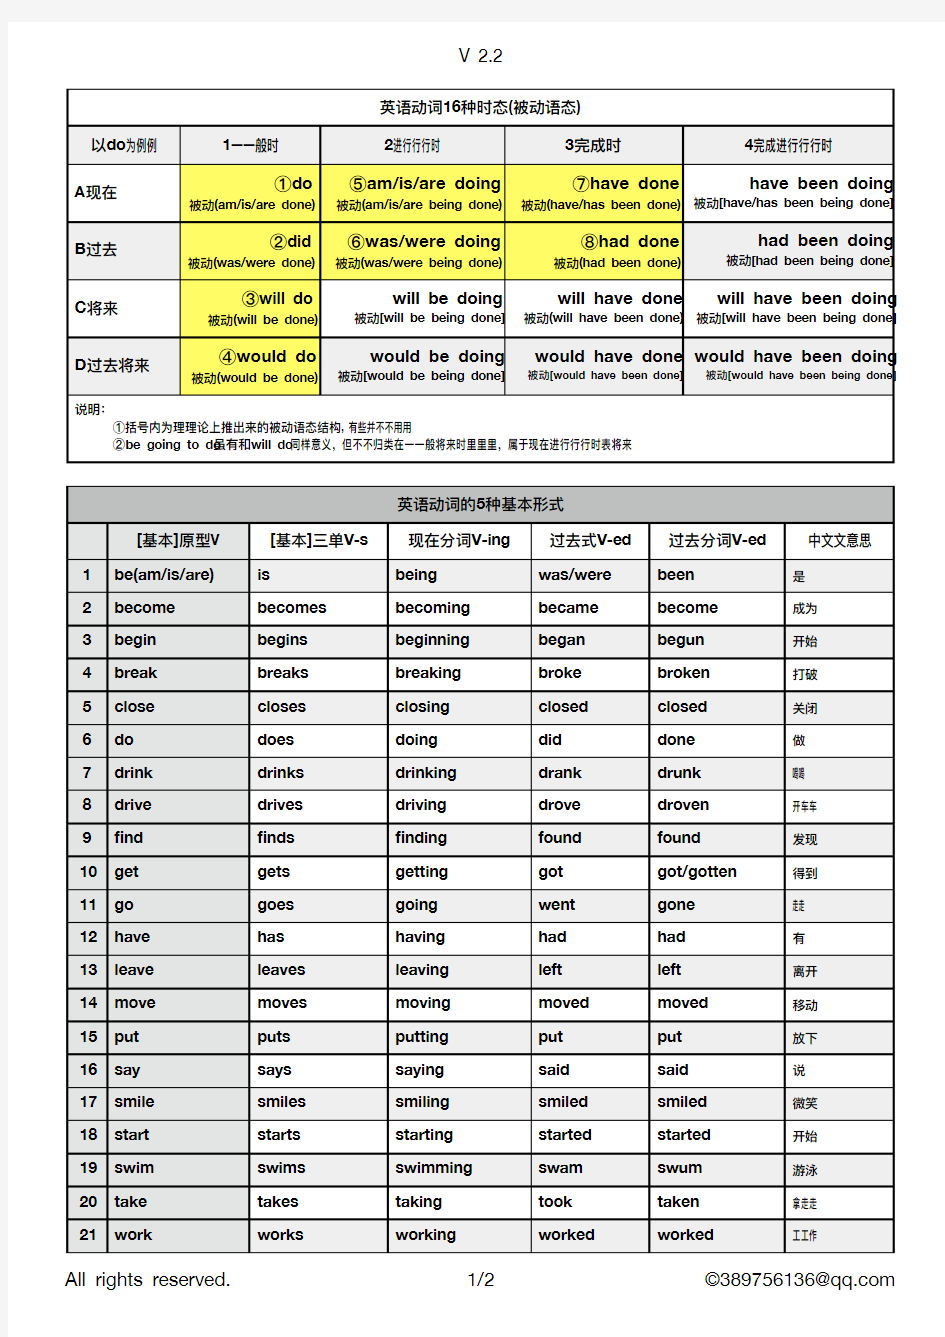 英语16种动词时态和语态大全表2.2版